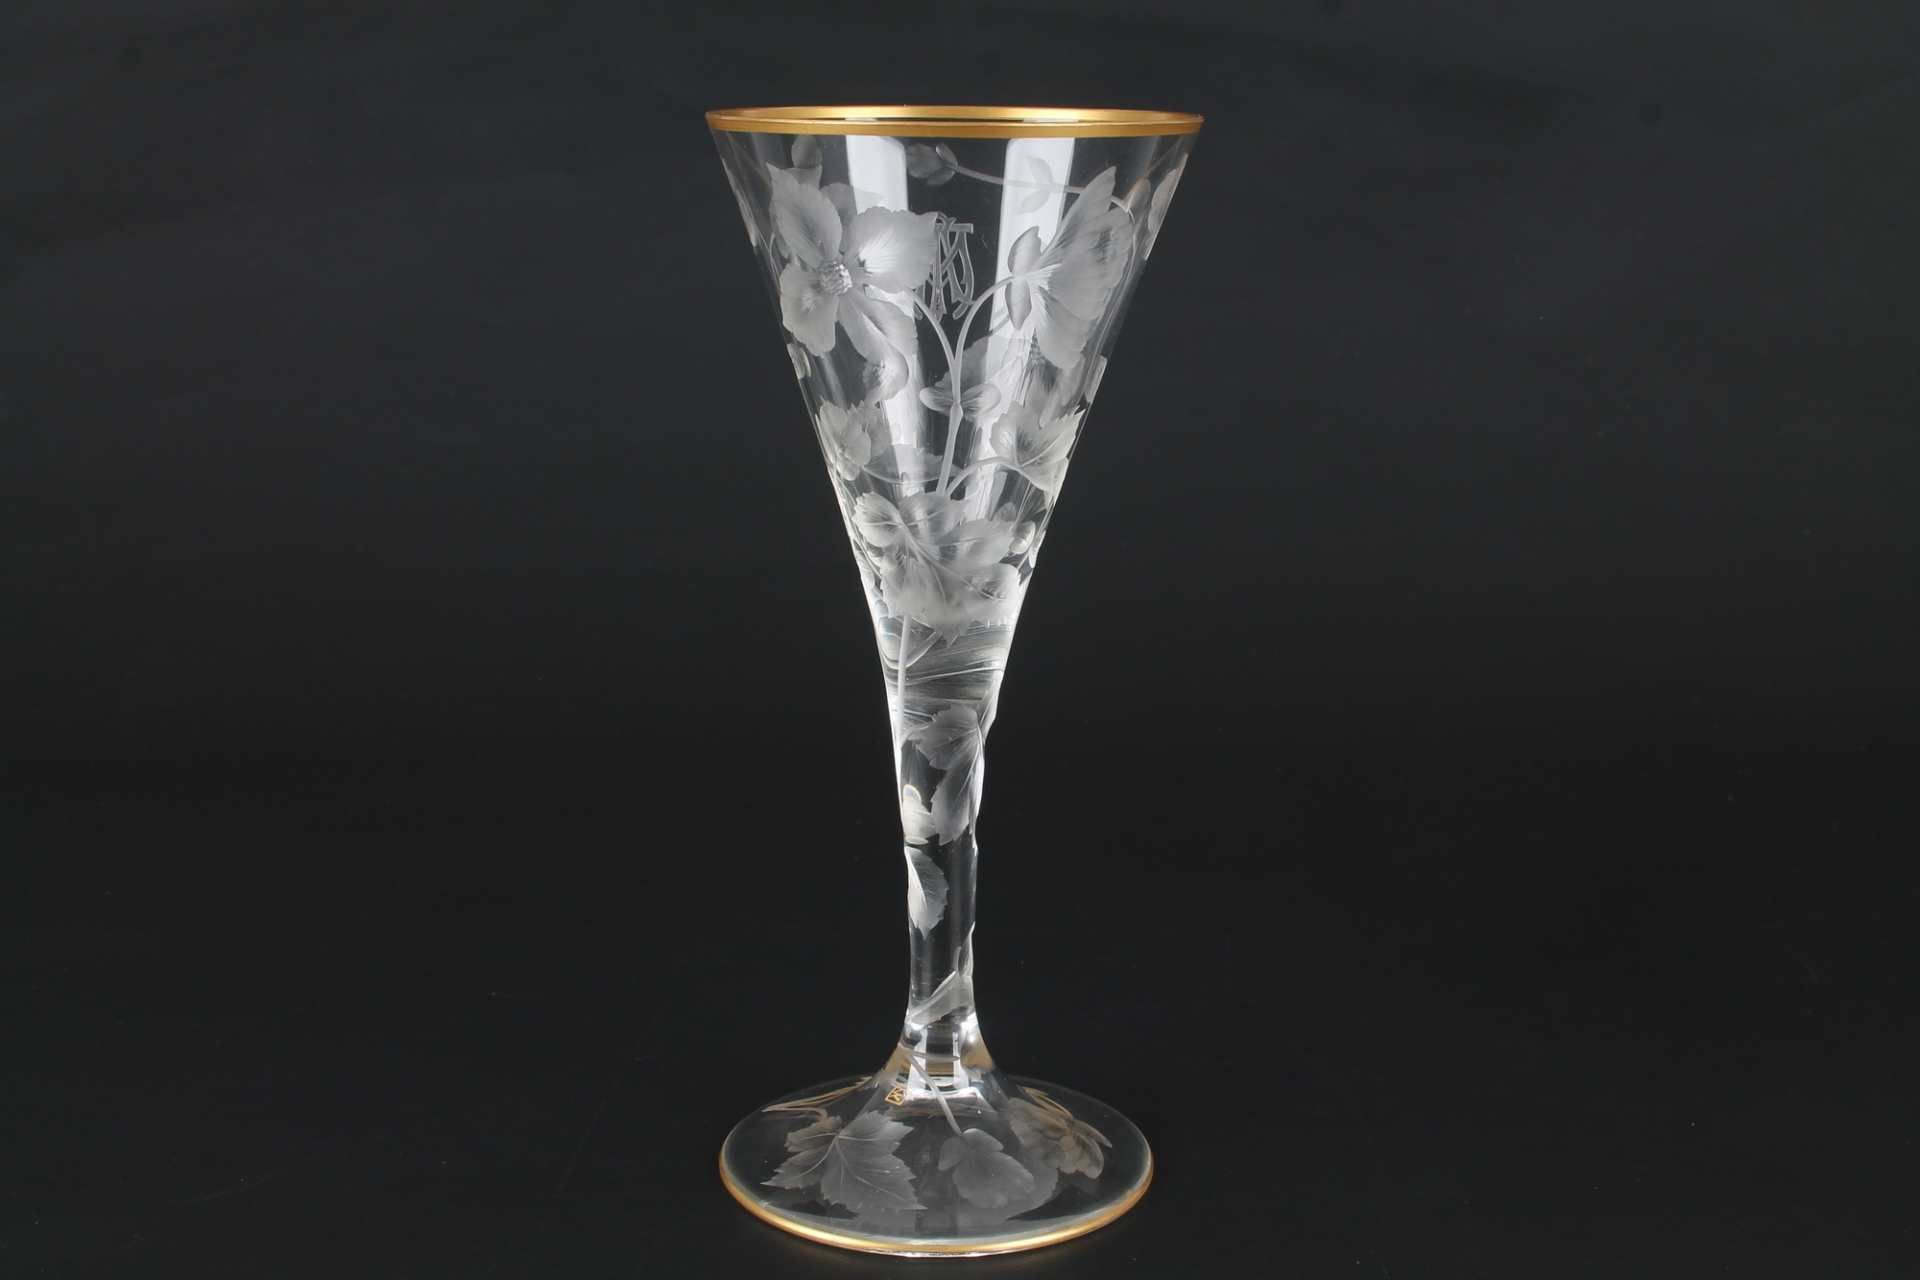 Ludwig Moser Karlsbad Kelchglas, glass goblet, - Image 2 of 4